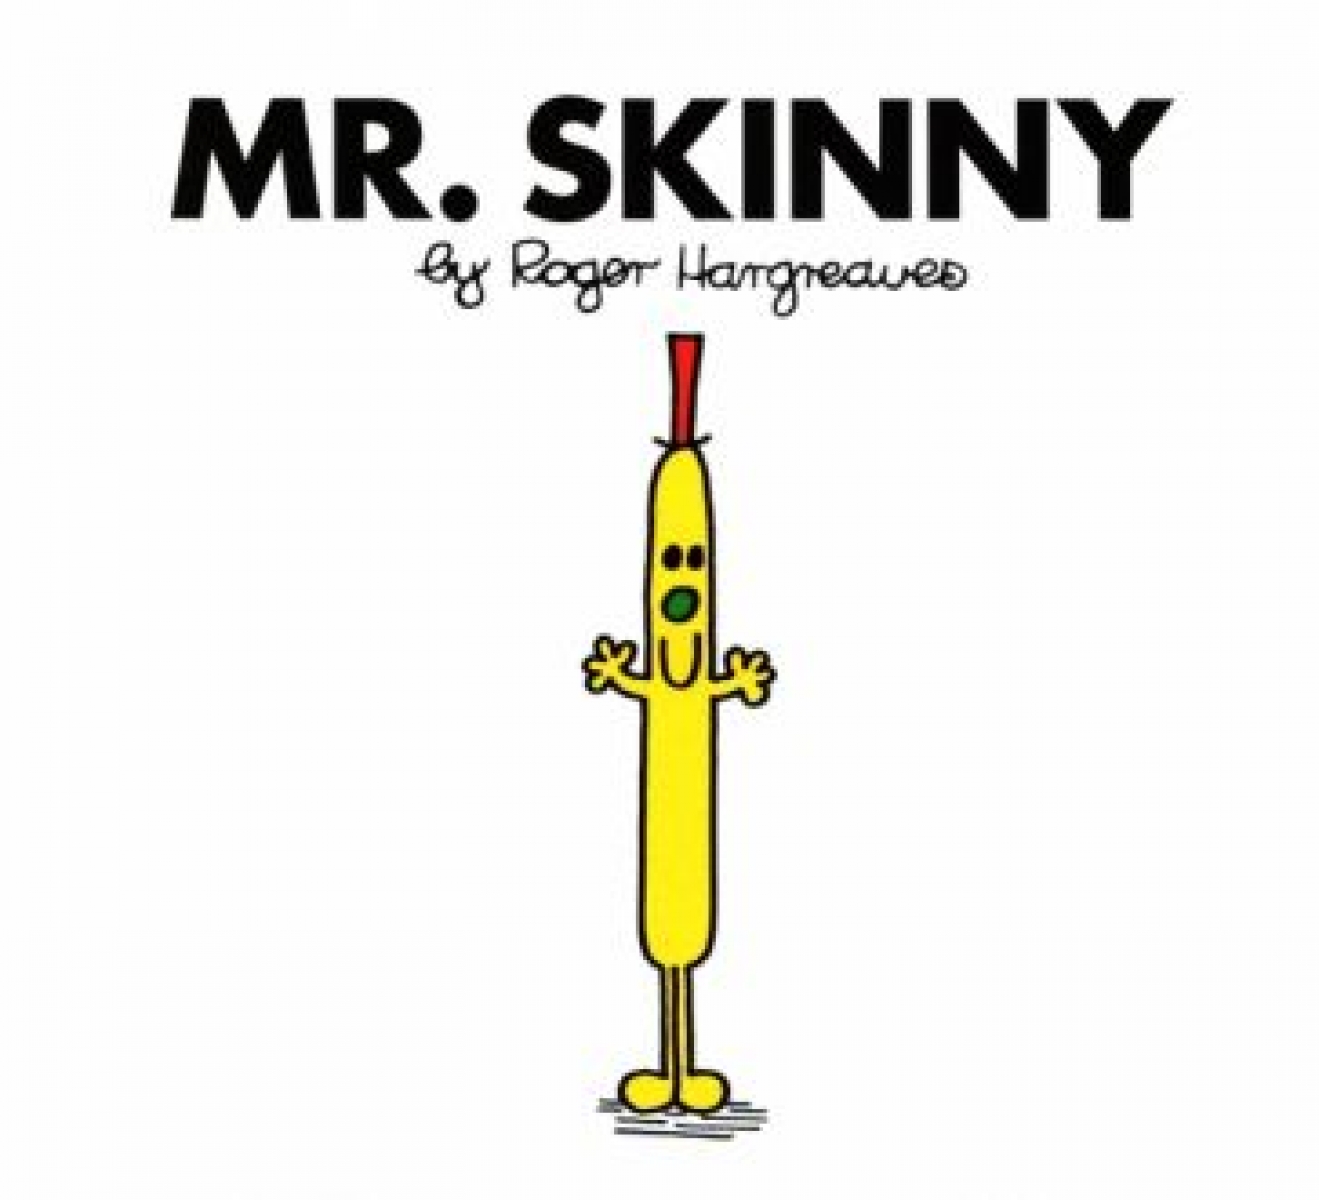 Hargreaves Roger Mr. Skinny 